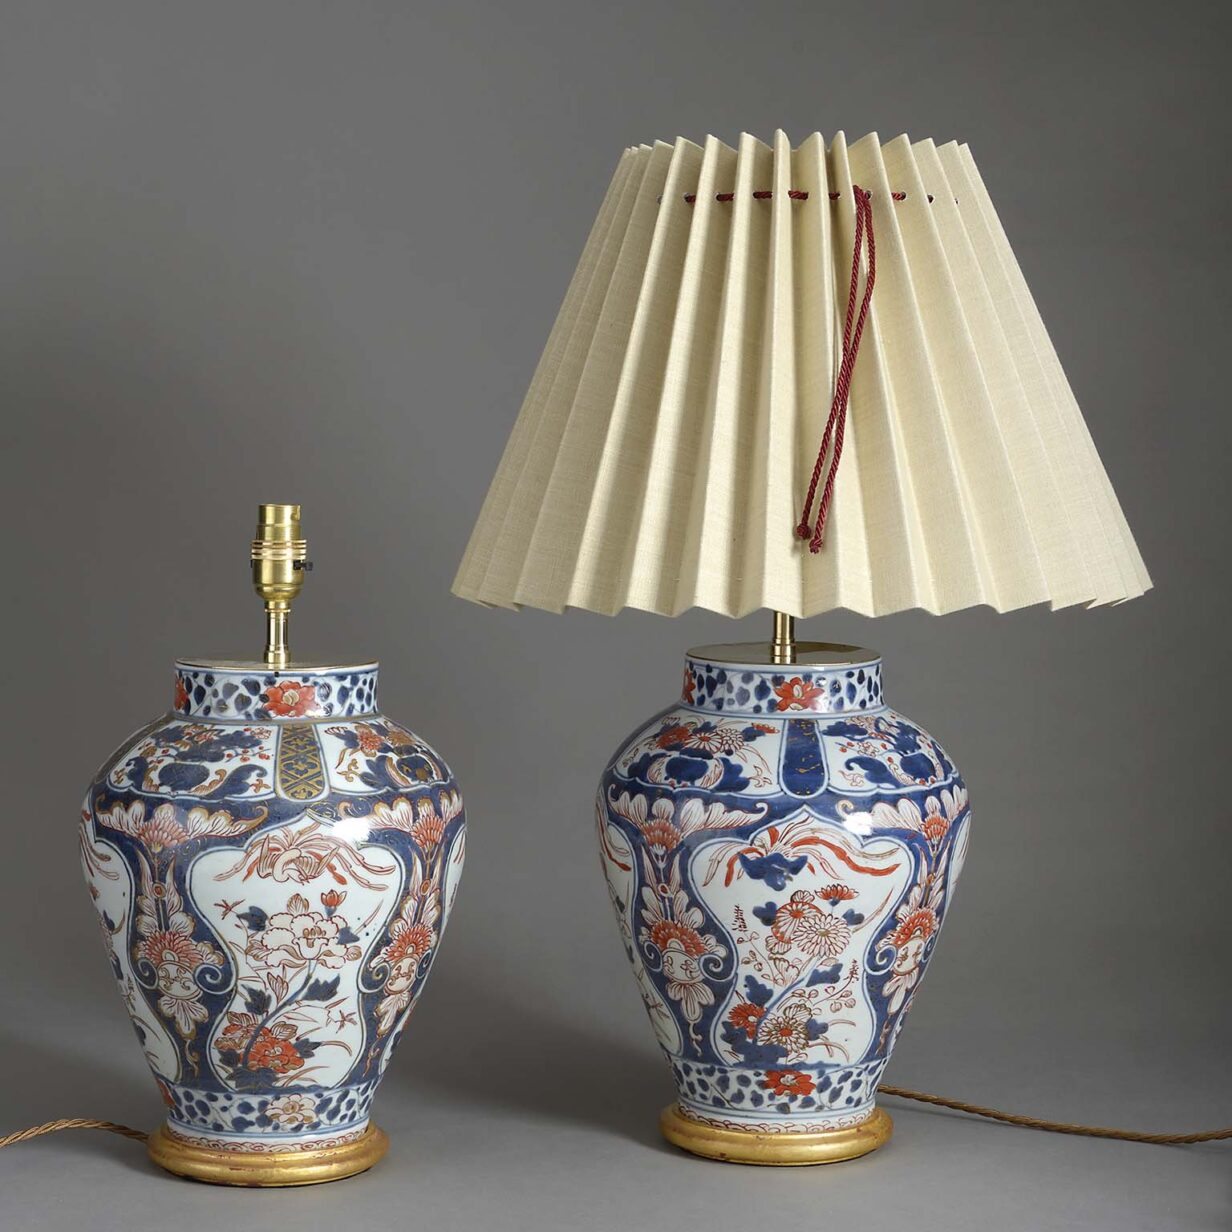 Pair of imari porcelain table lamps